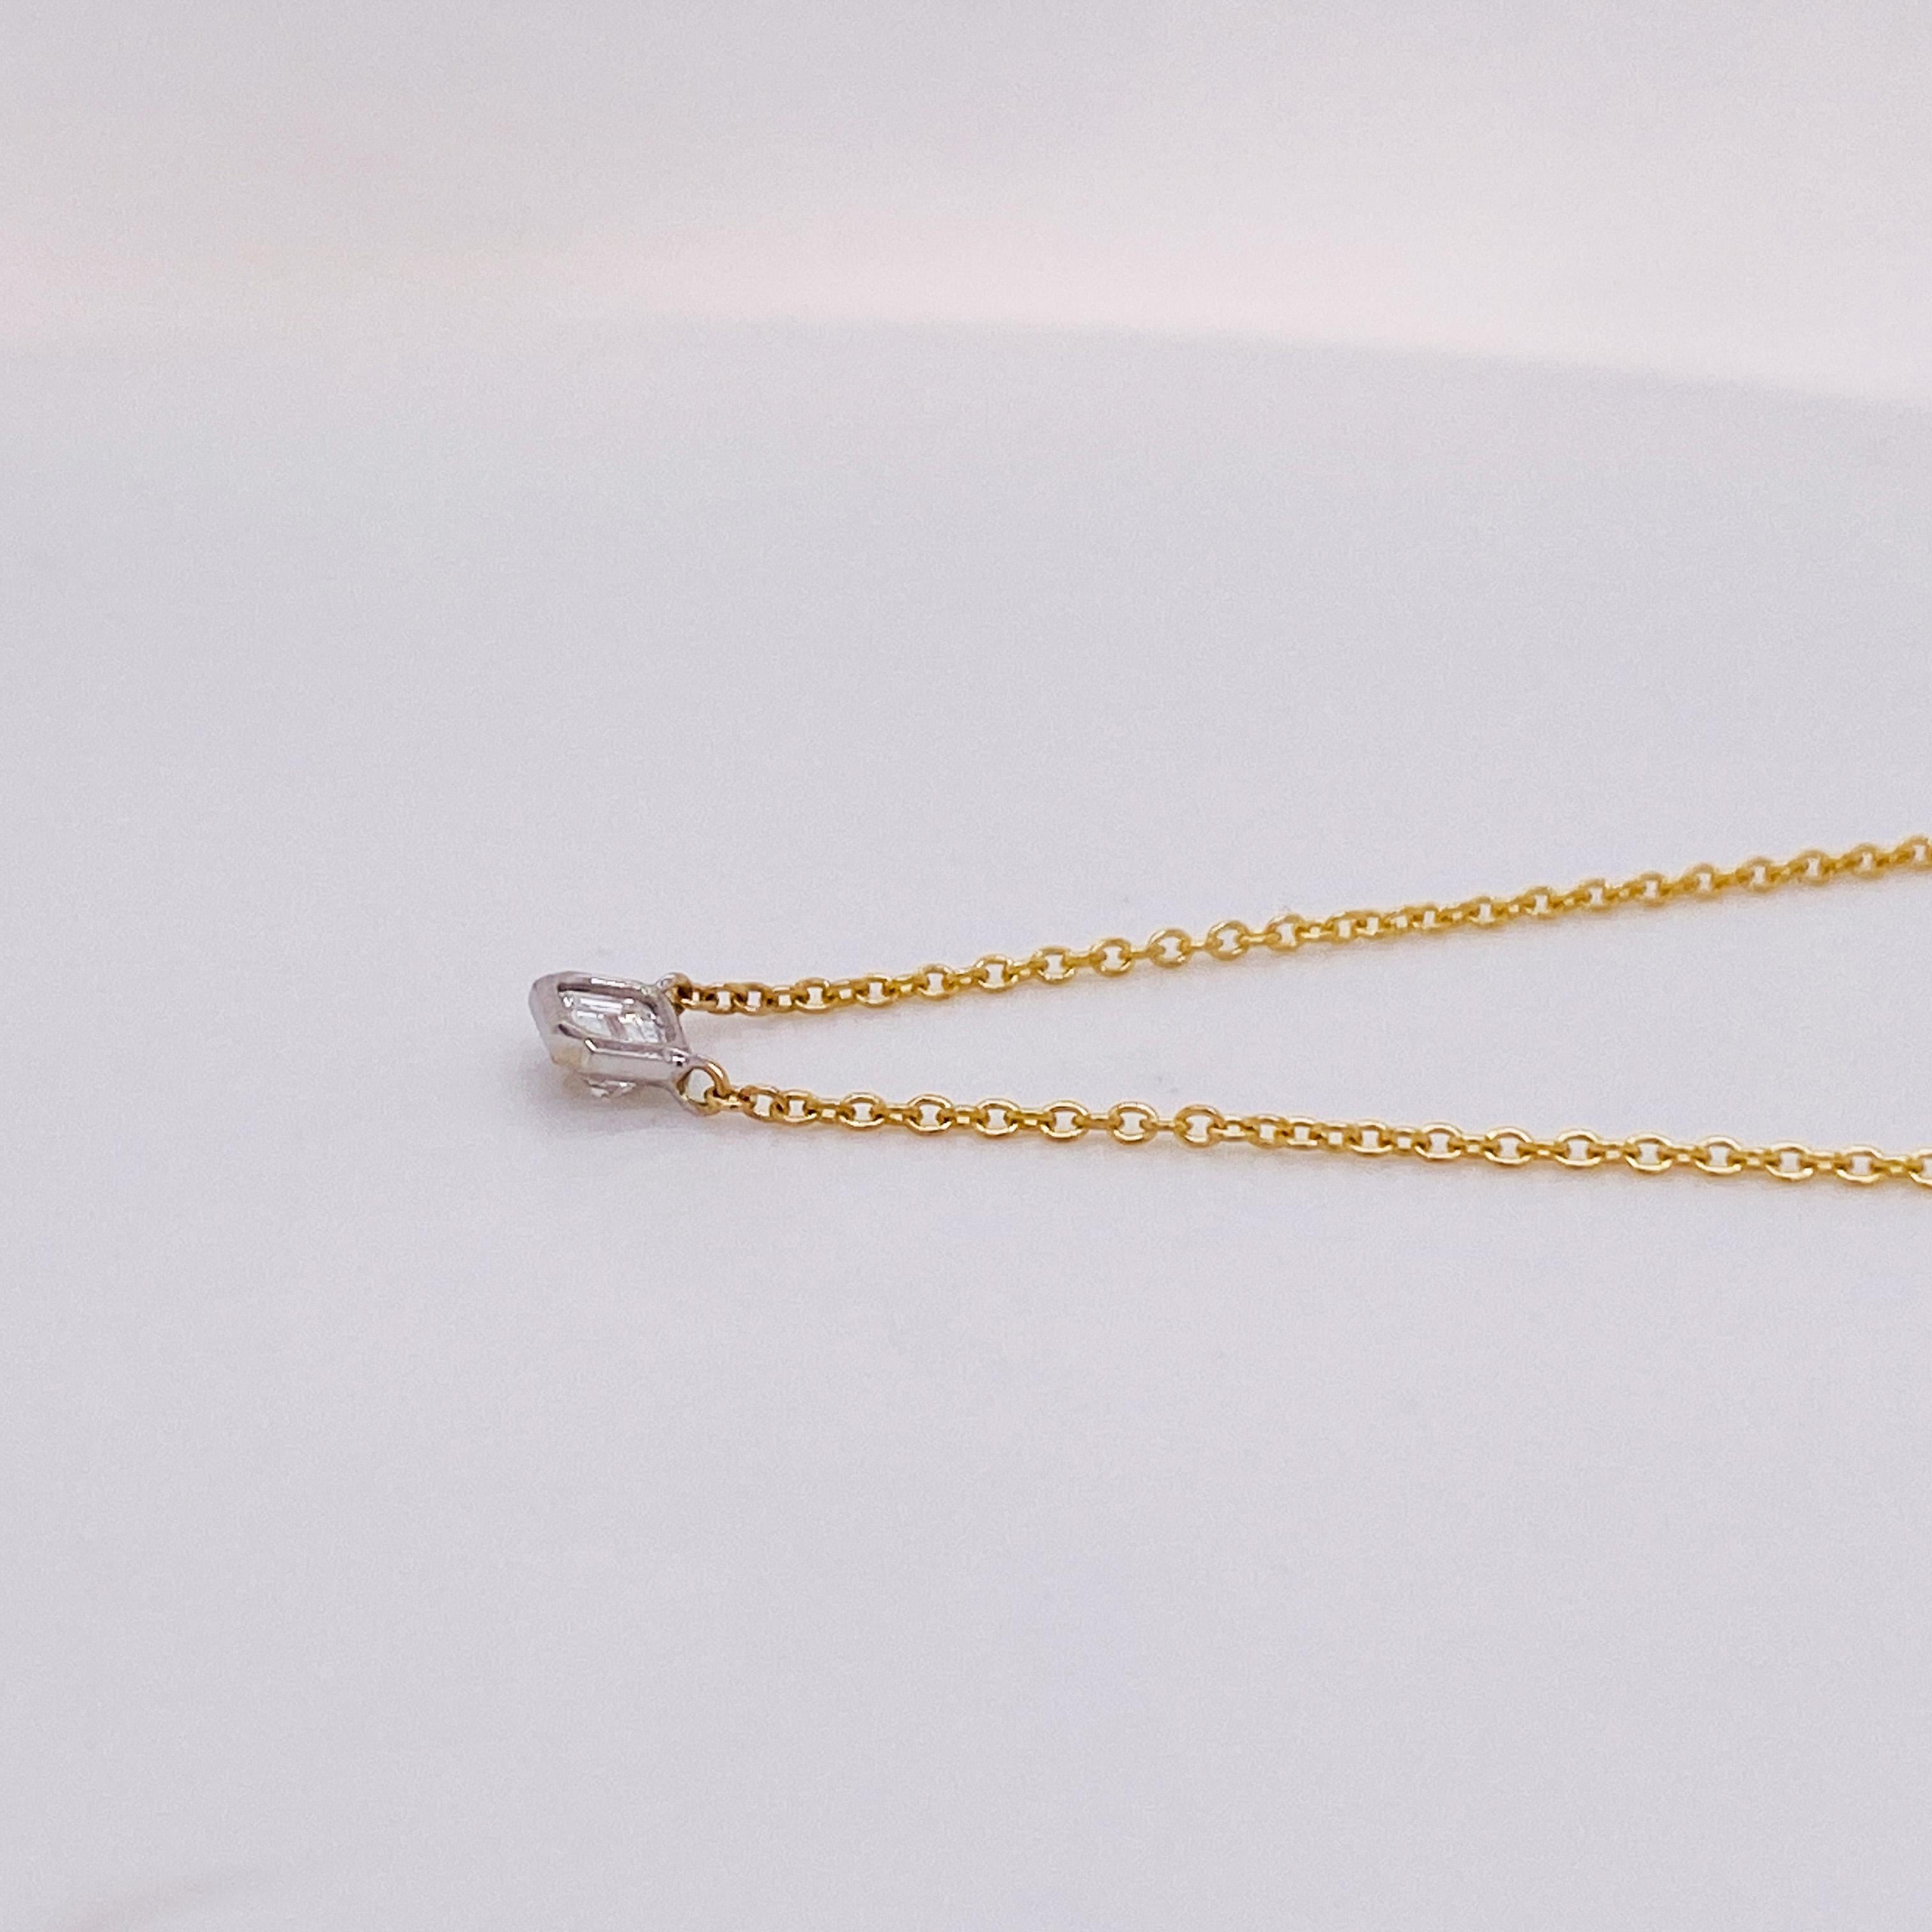 Diese bezaubernde Diamant-Solitär-Halskette ist ein perfekter Alltags-Akzent um den Hals Ihrer Liebsten! Der wunderschöne Diamant im Smaragdschliff der Farbe G sitzt von Osten nach Westen und sorgt für einen modernen, eleganten Look. Der Diamant hat